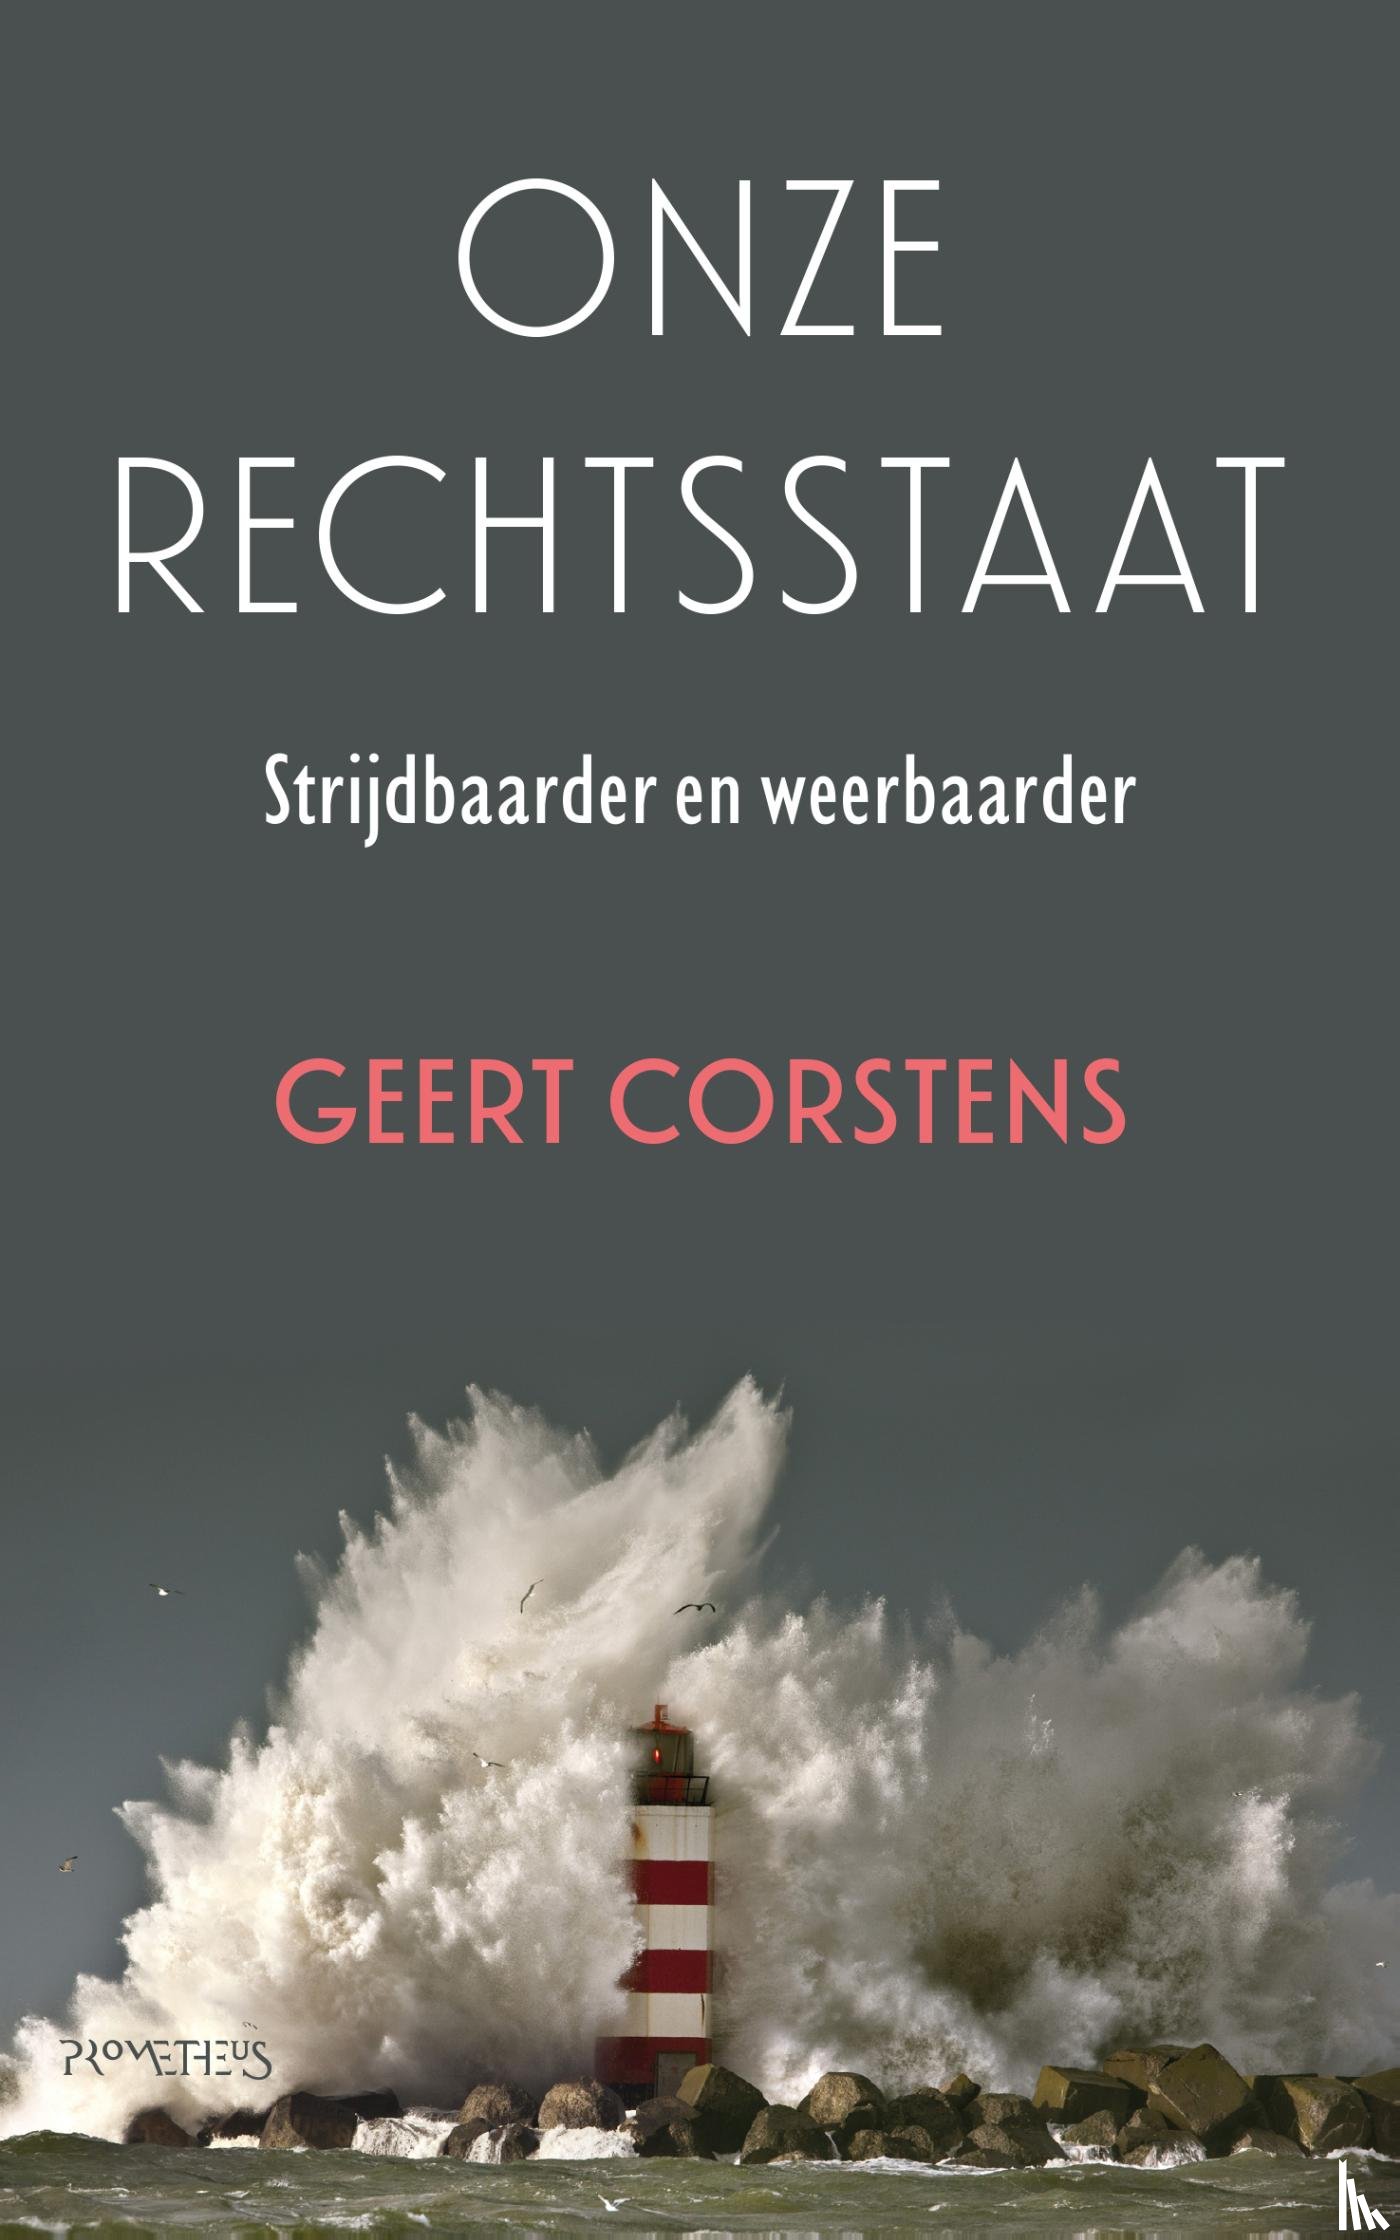 Corstens, Geert - Onze rechtsstaat